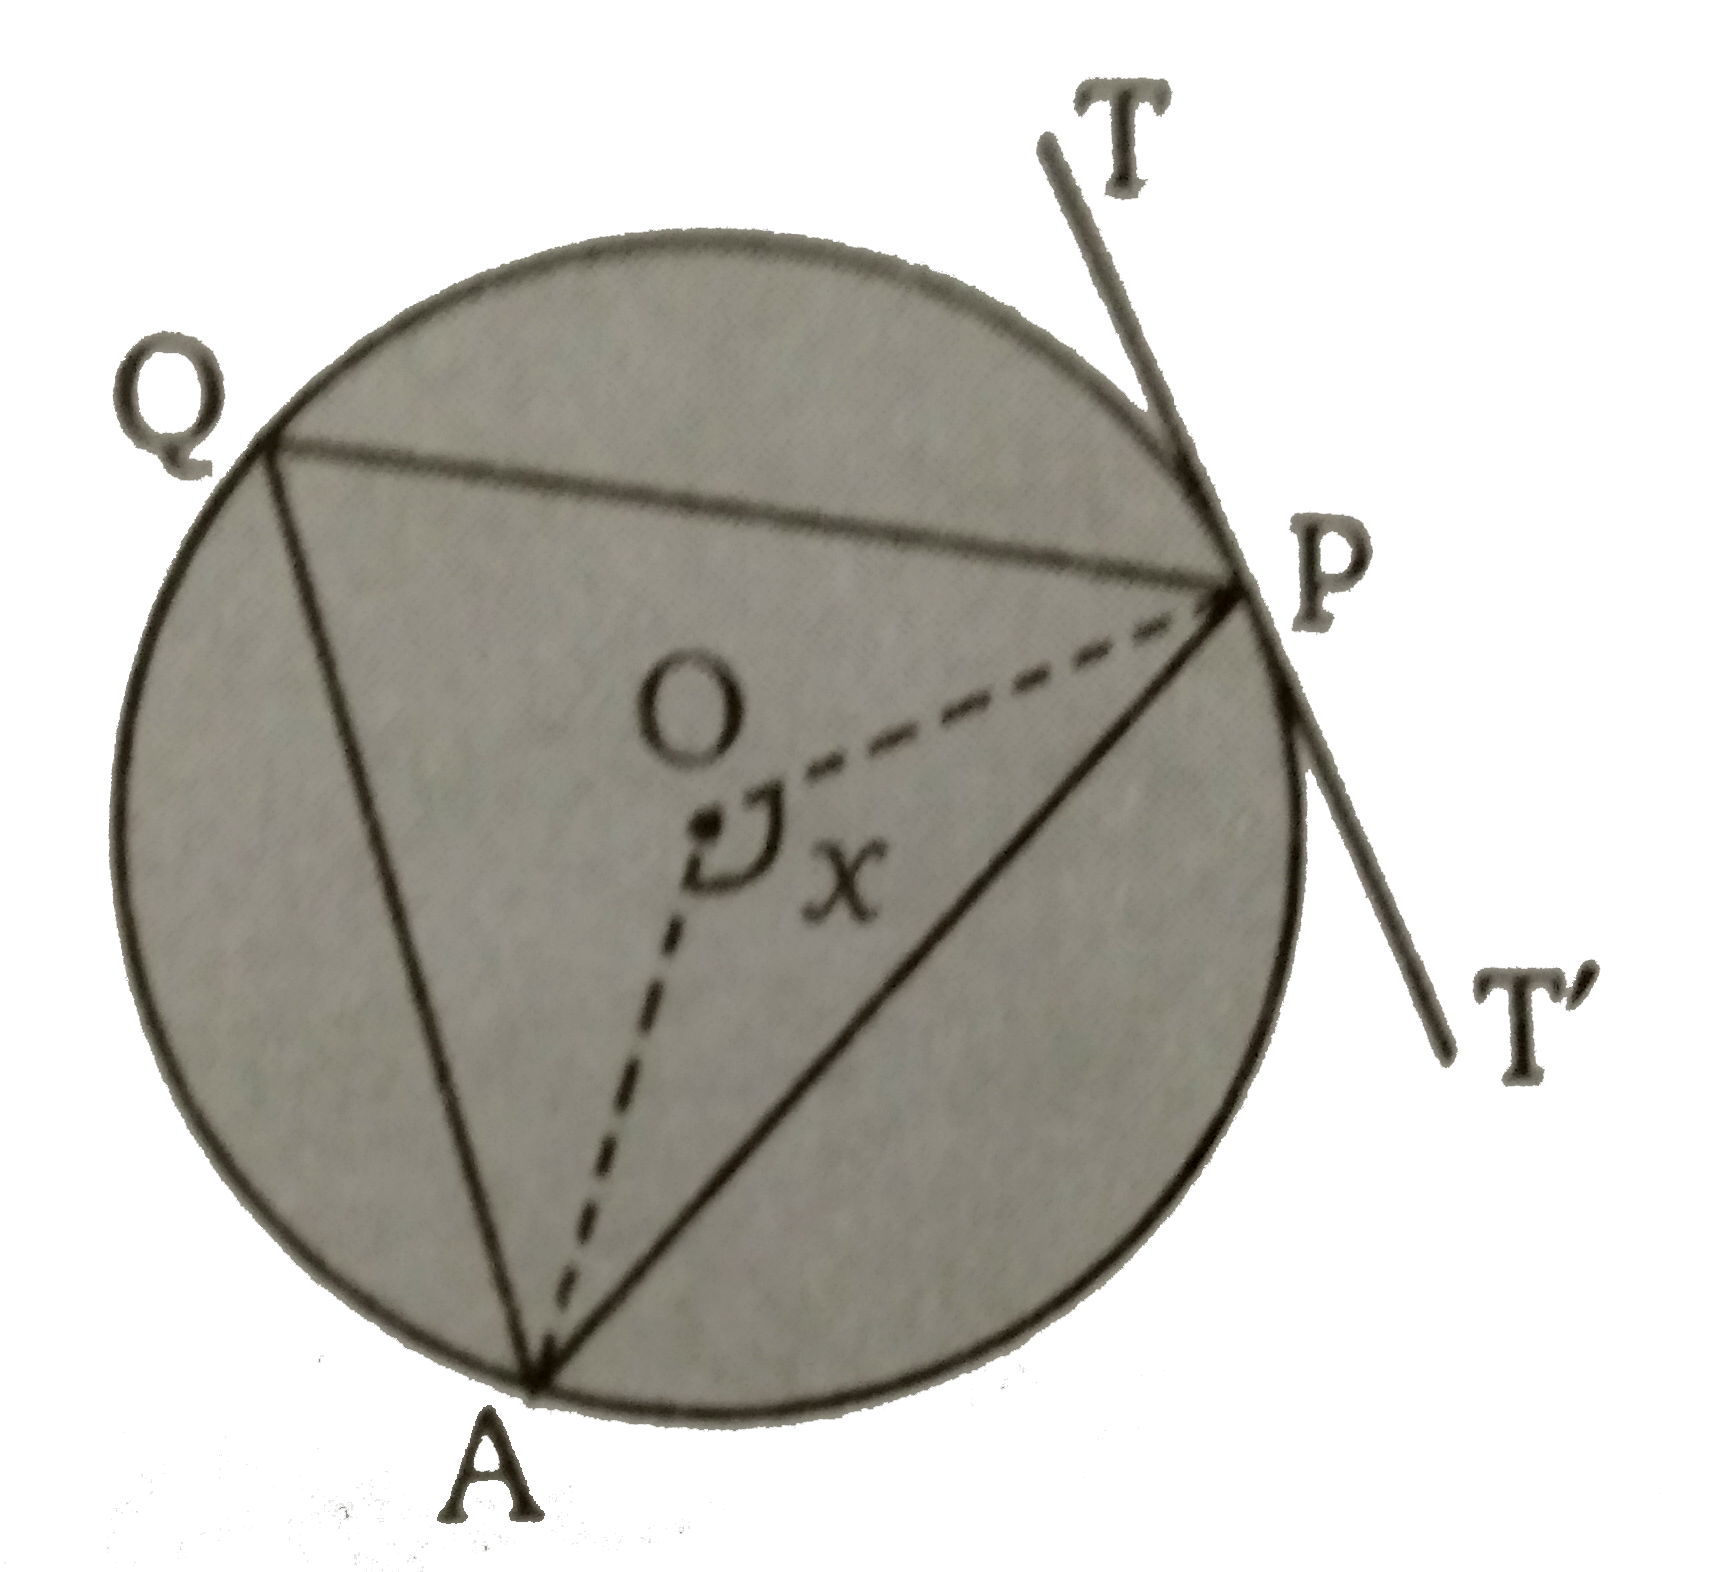 दिये गये चित्र में, O  केंद्र वाले वृत्त के किसी बिन्दु P  पर एक स्पर्शी  TPT'  है। यदि angleAPT = 65^(@)  तथा  anglePOA = x^(@)  तब x  का मान ज्ञात कीजिए ।